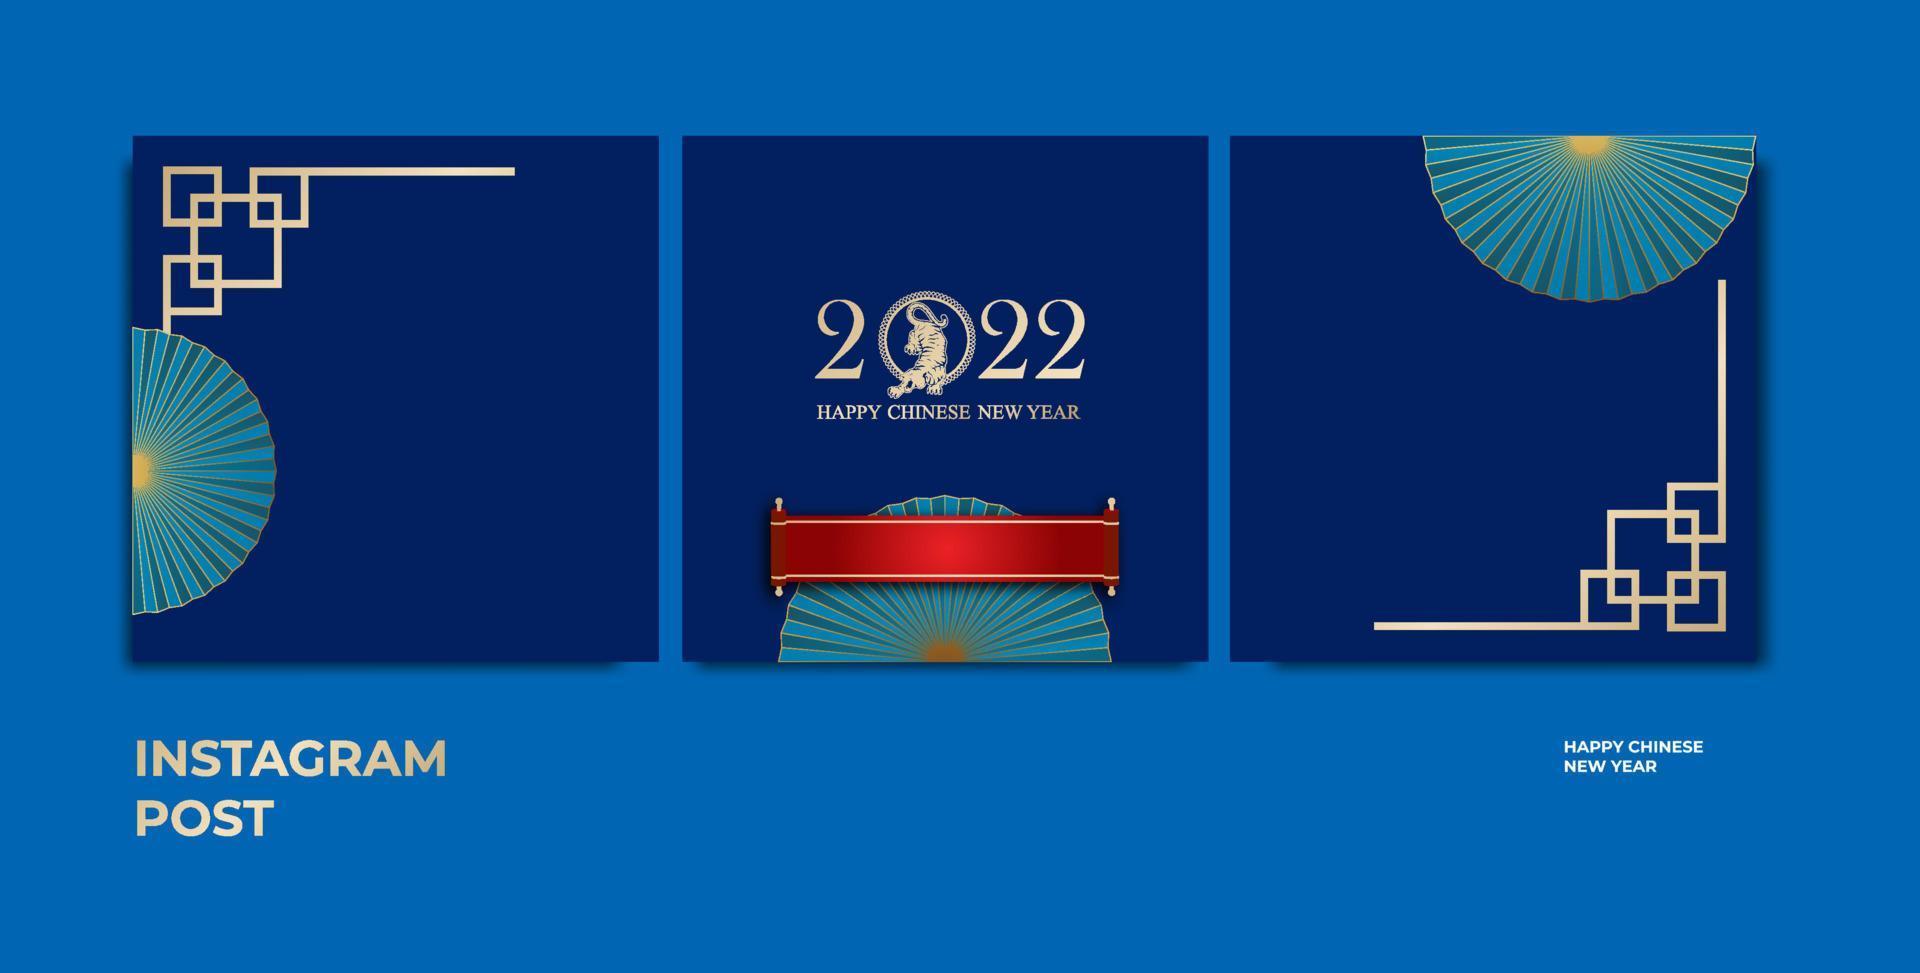 colore blu instagram post disegno vettoriale, simbolo del nuovo anno cinese con cornice ornamentale e busta rossa. vettore